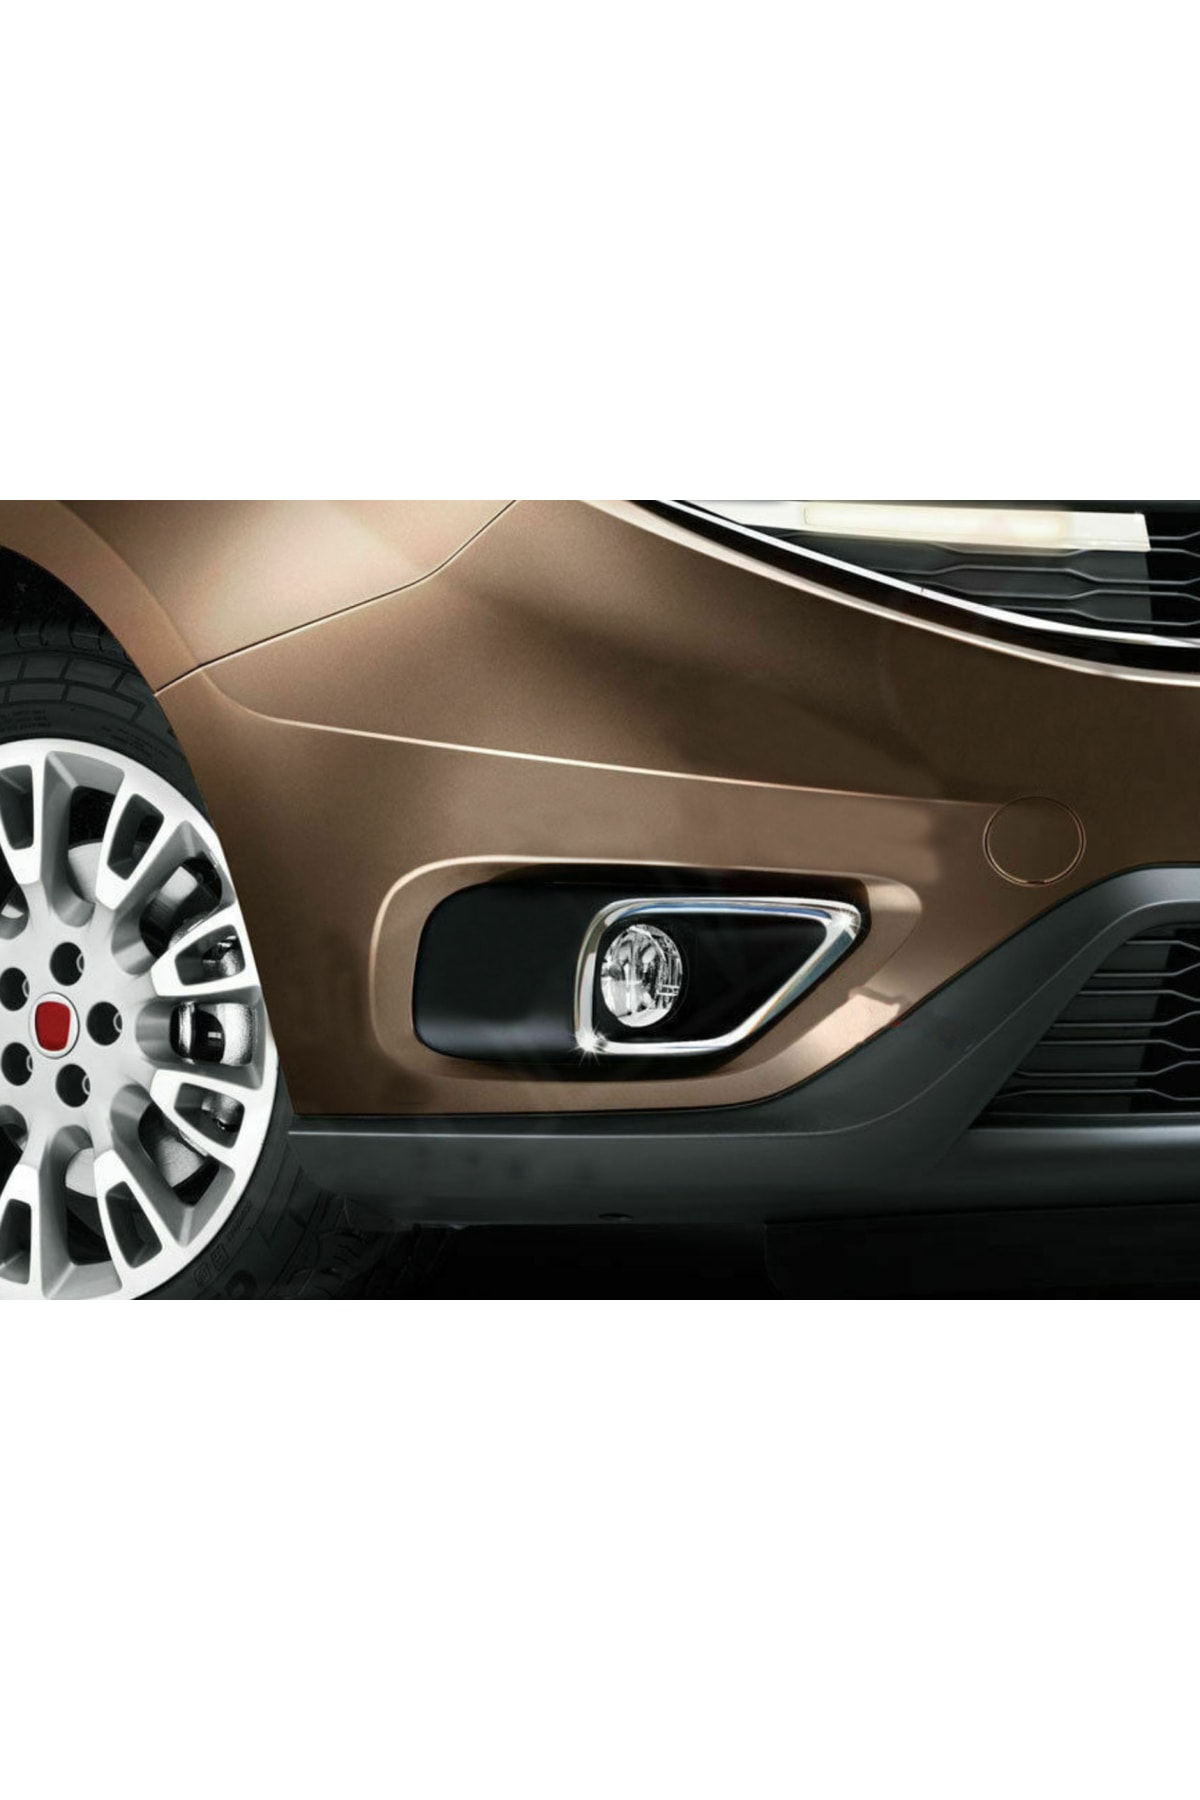 A&G Tuning Fiat Doblo Krom Sis Farı Çerçevesi 2015 Üzeri Paslanmaz Çelik